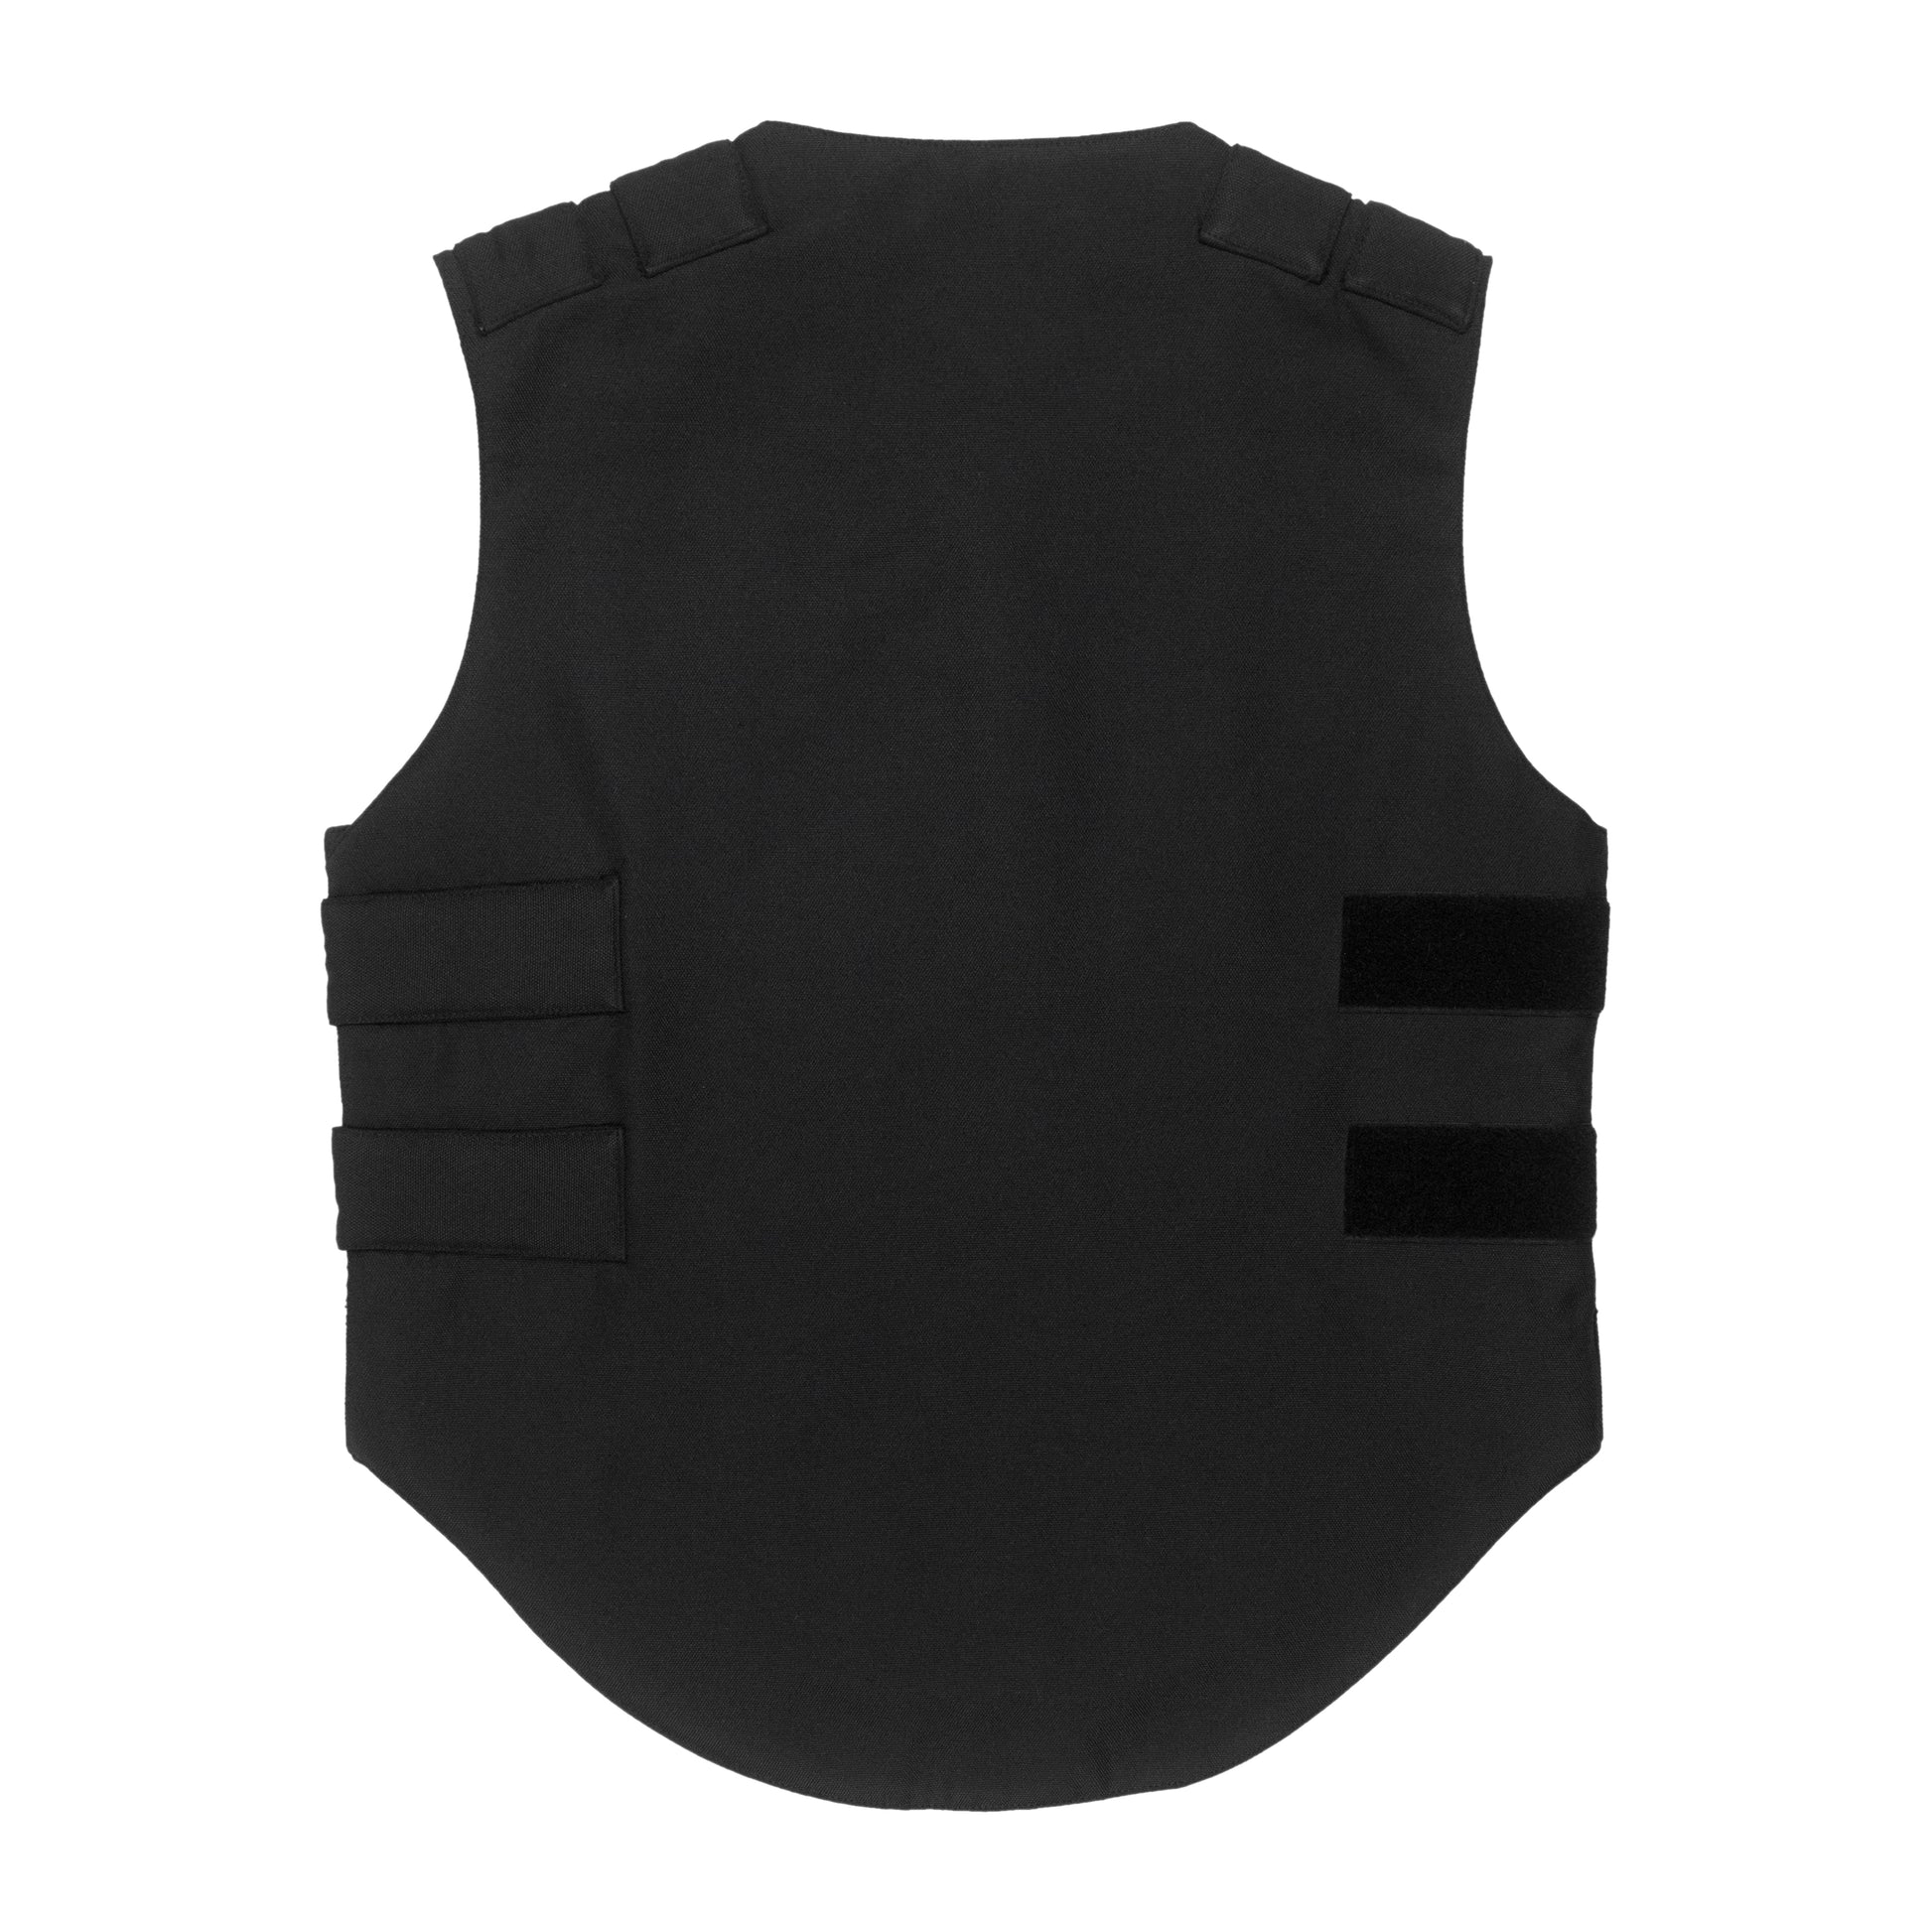 designer bulletproof vest